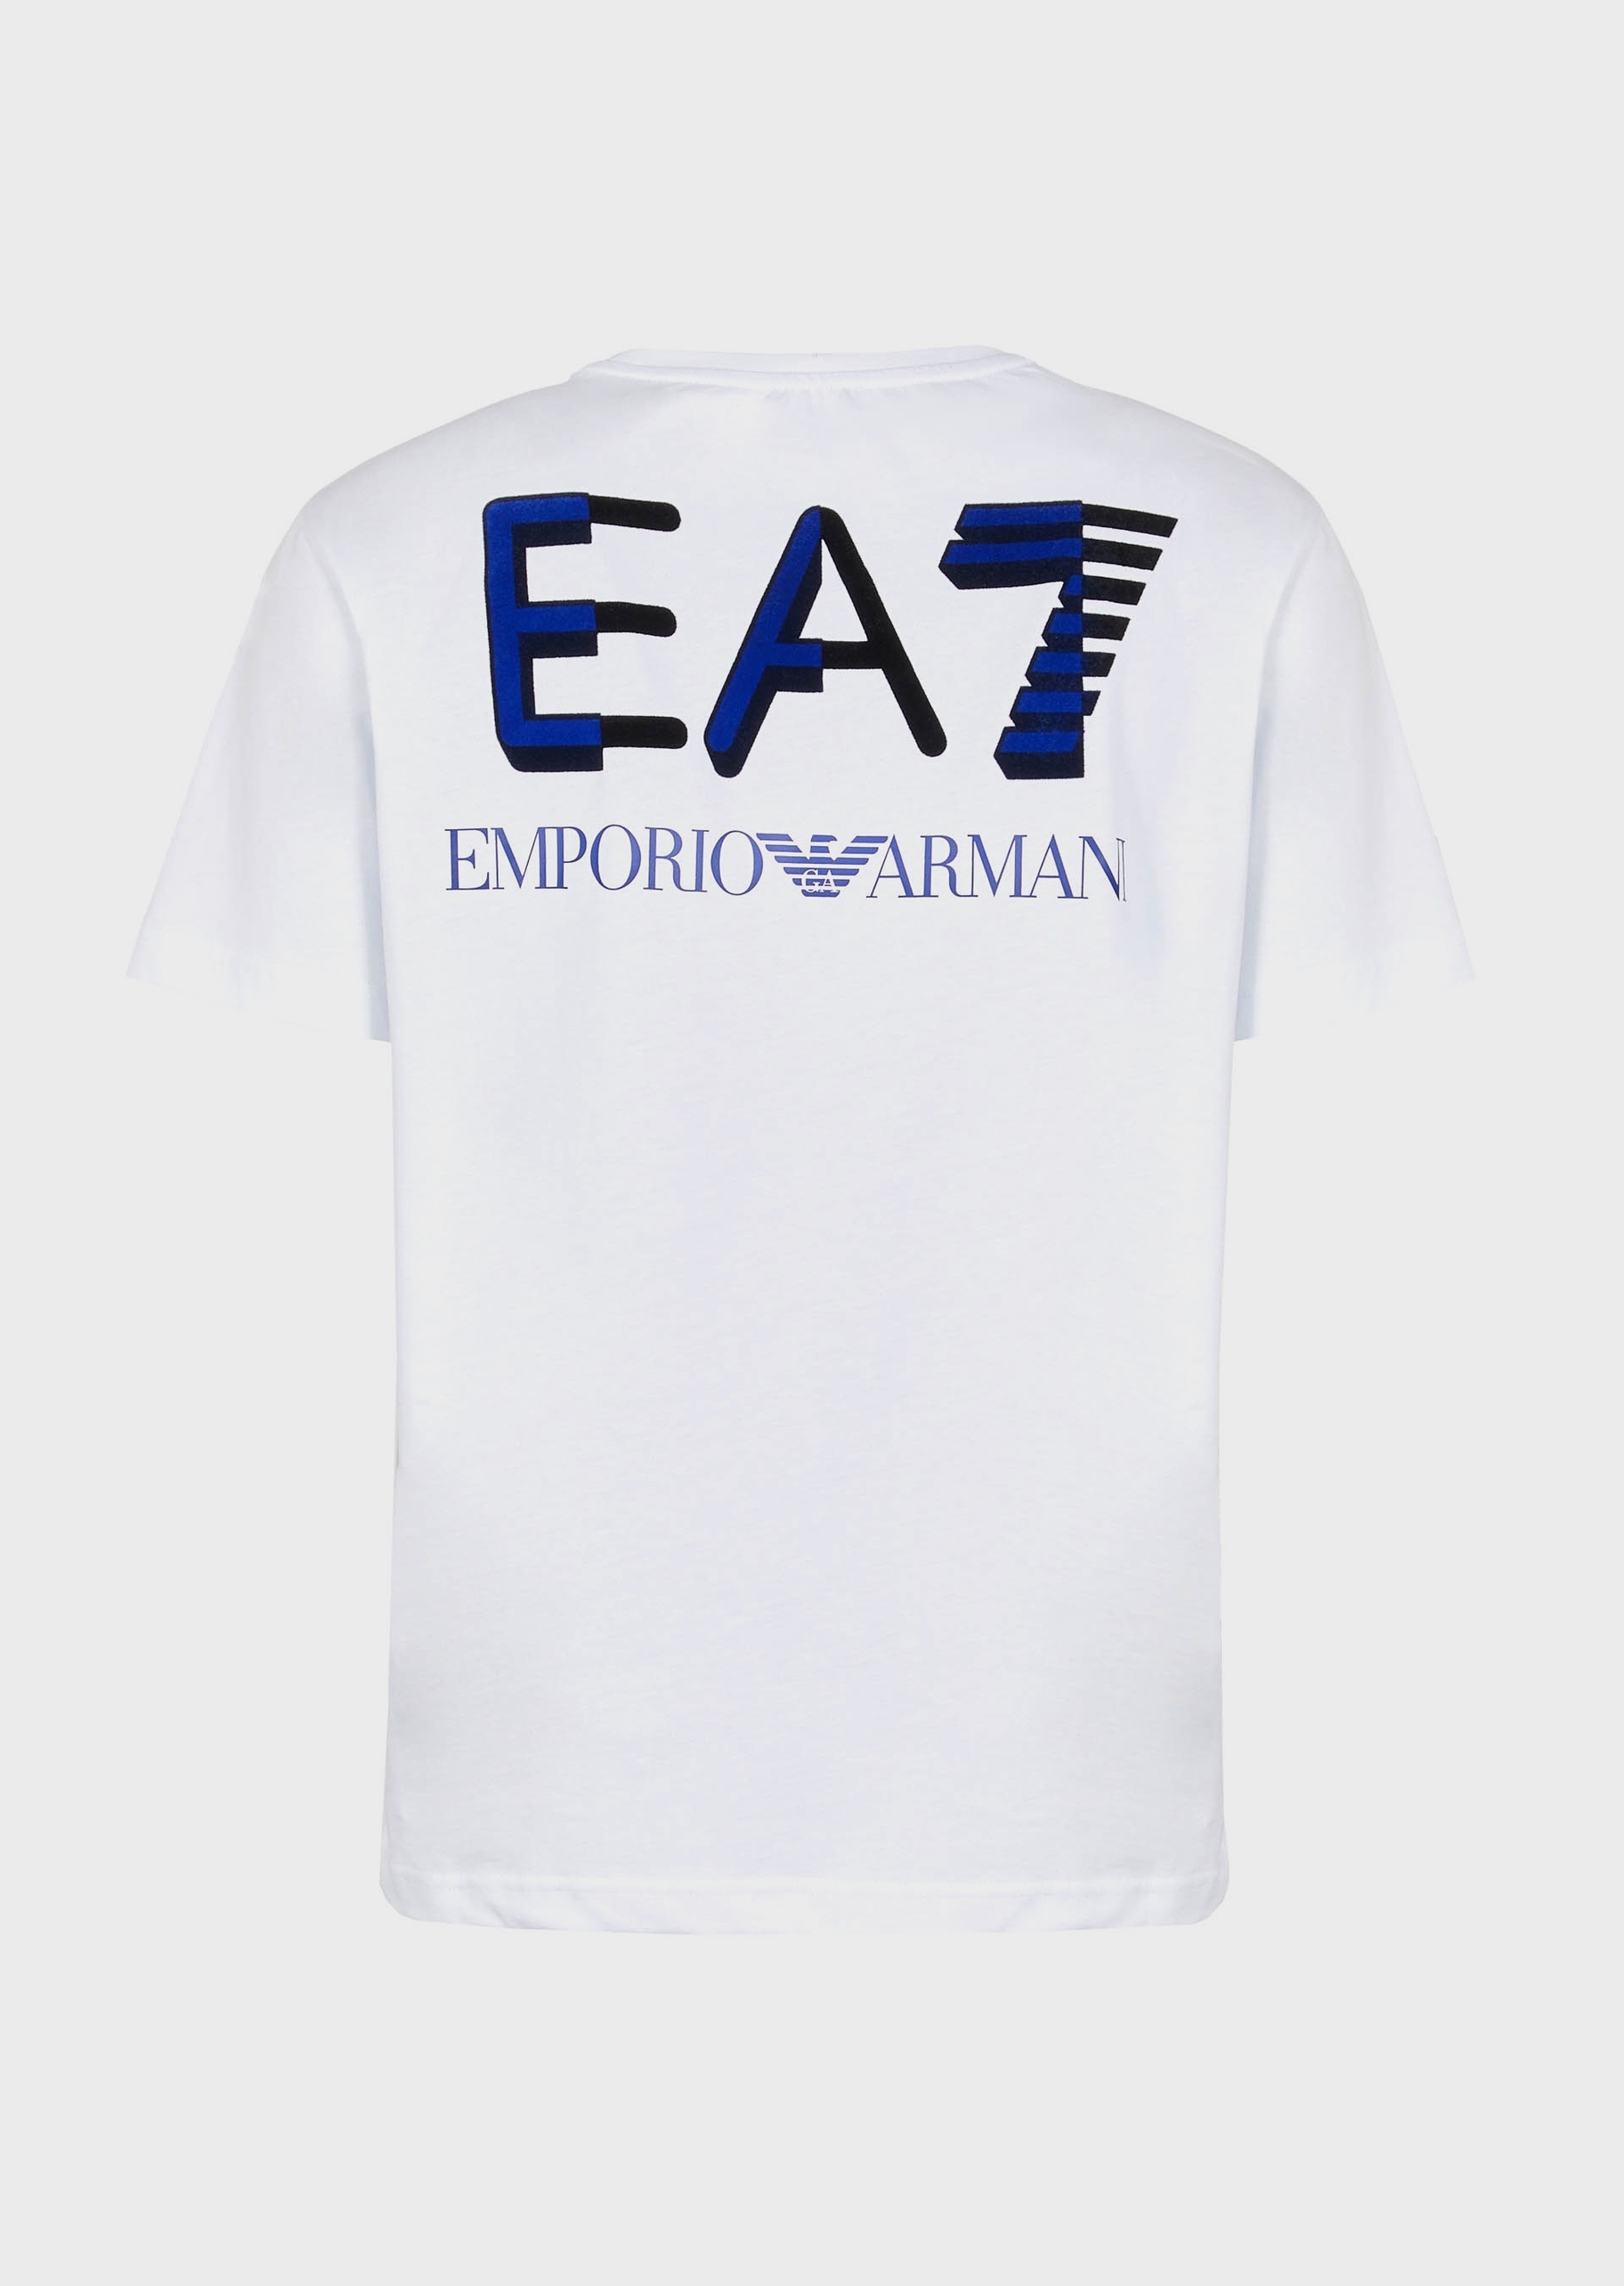 EA7 男士双色LOGO全棉运动T恤